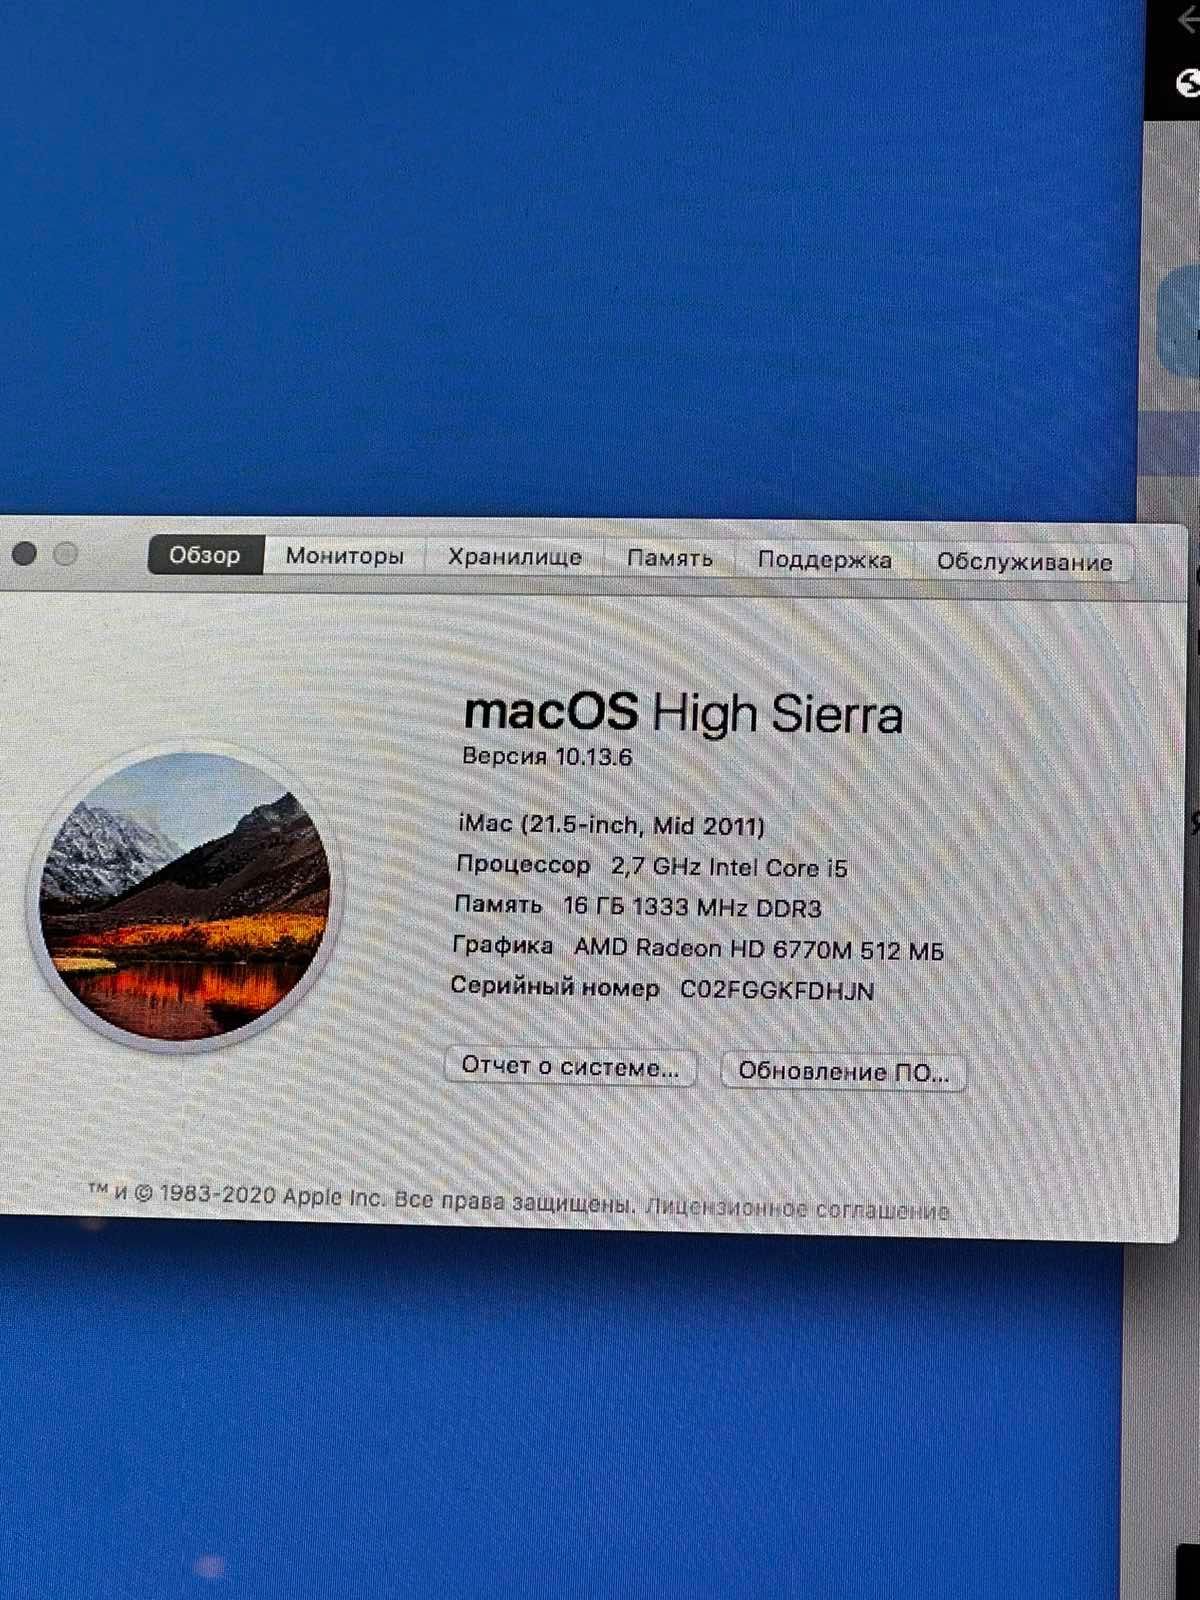 iMac 512gb macOs High Sierra